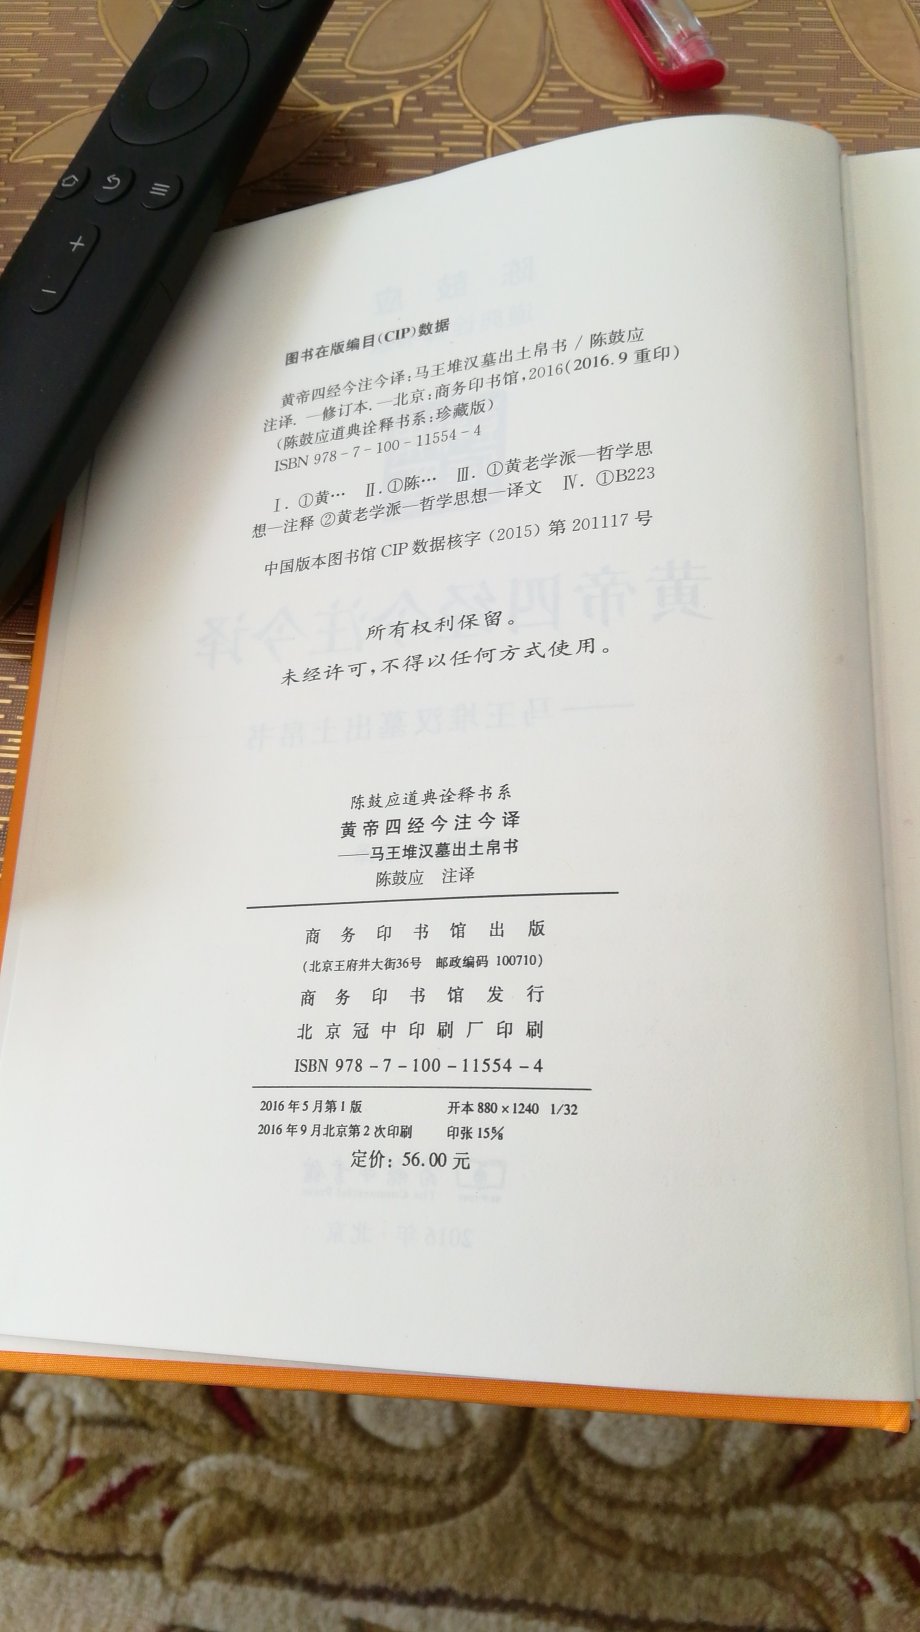 《黄帝四经今注今译》商务印书馆2016年版，陈鼓应注译。和中华书局版内容一样。